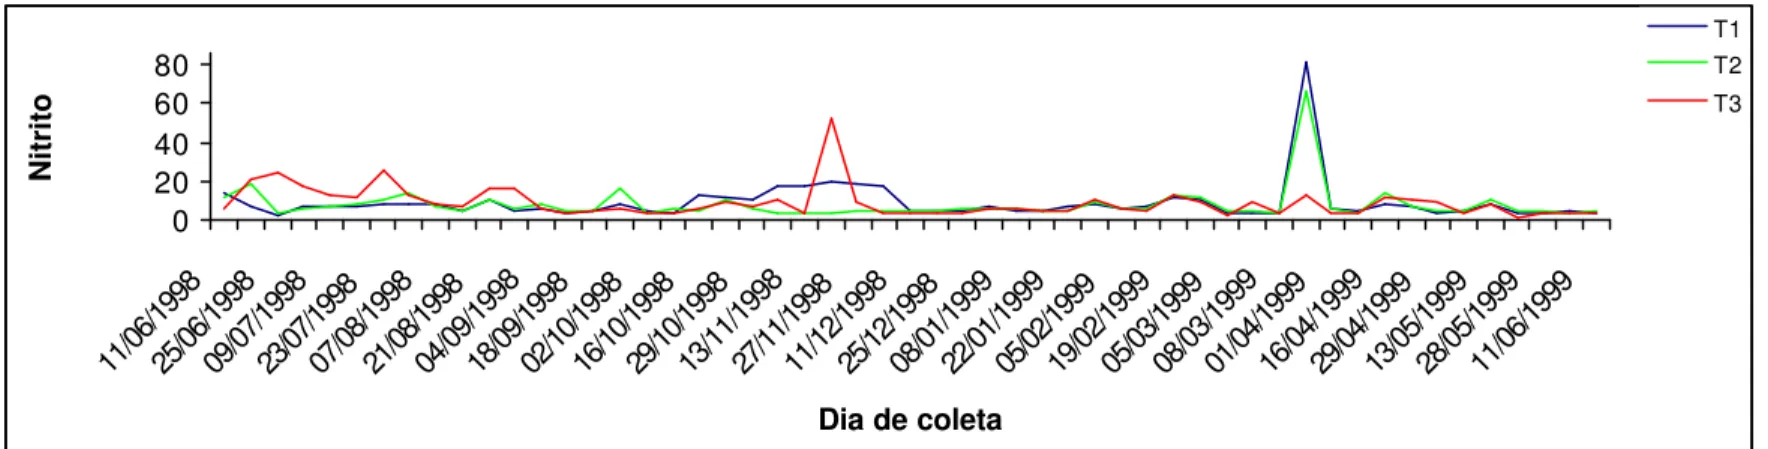 FIGURA 25 – Variação do nitrito durante o período de cultivo em Bananeiras. 